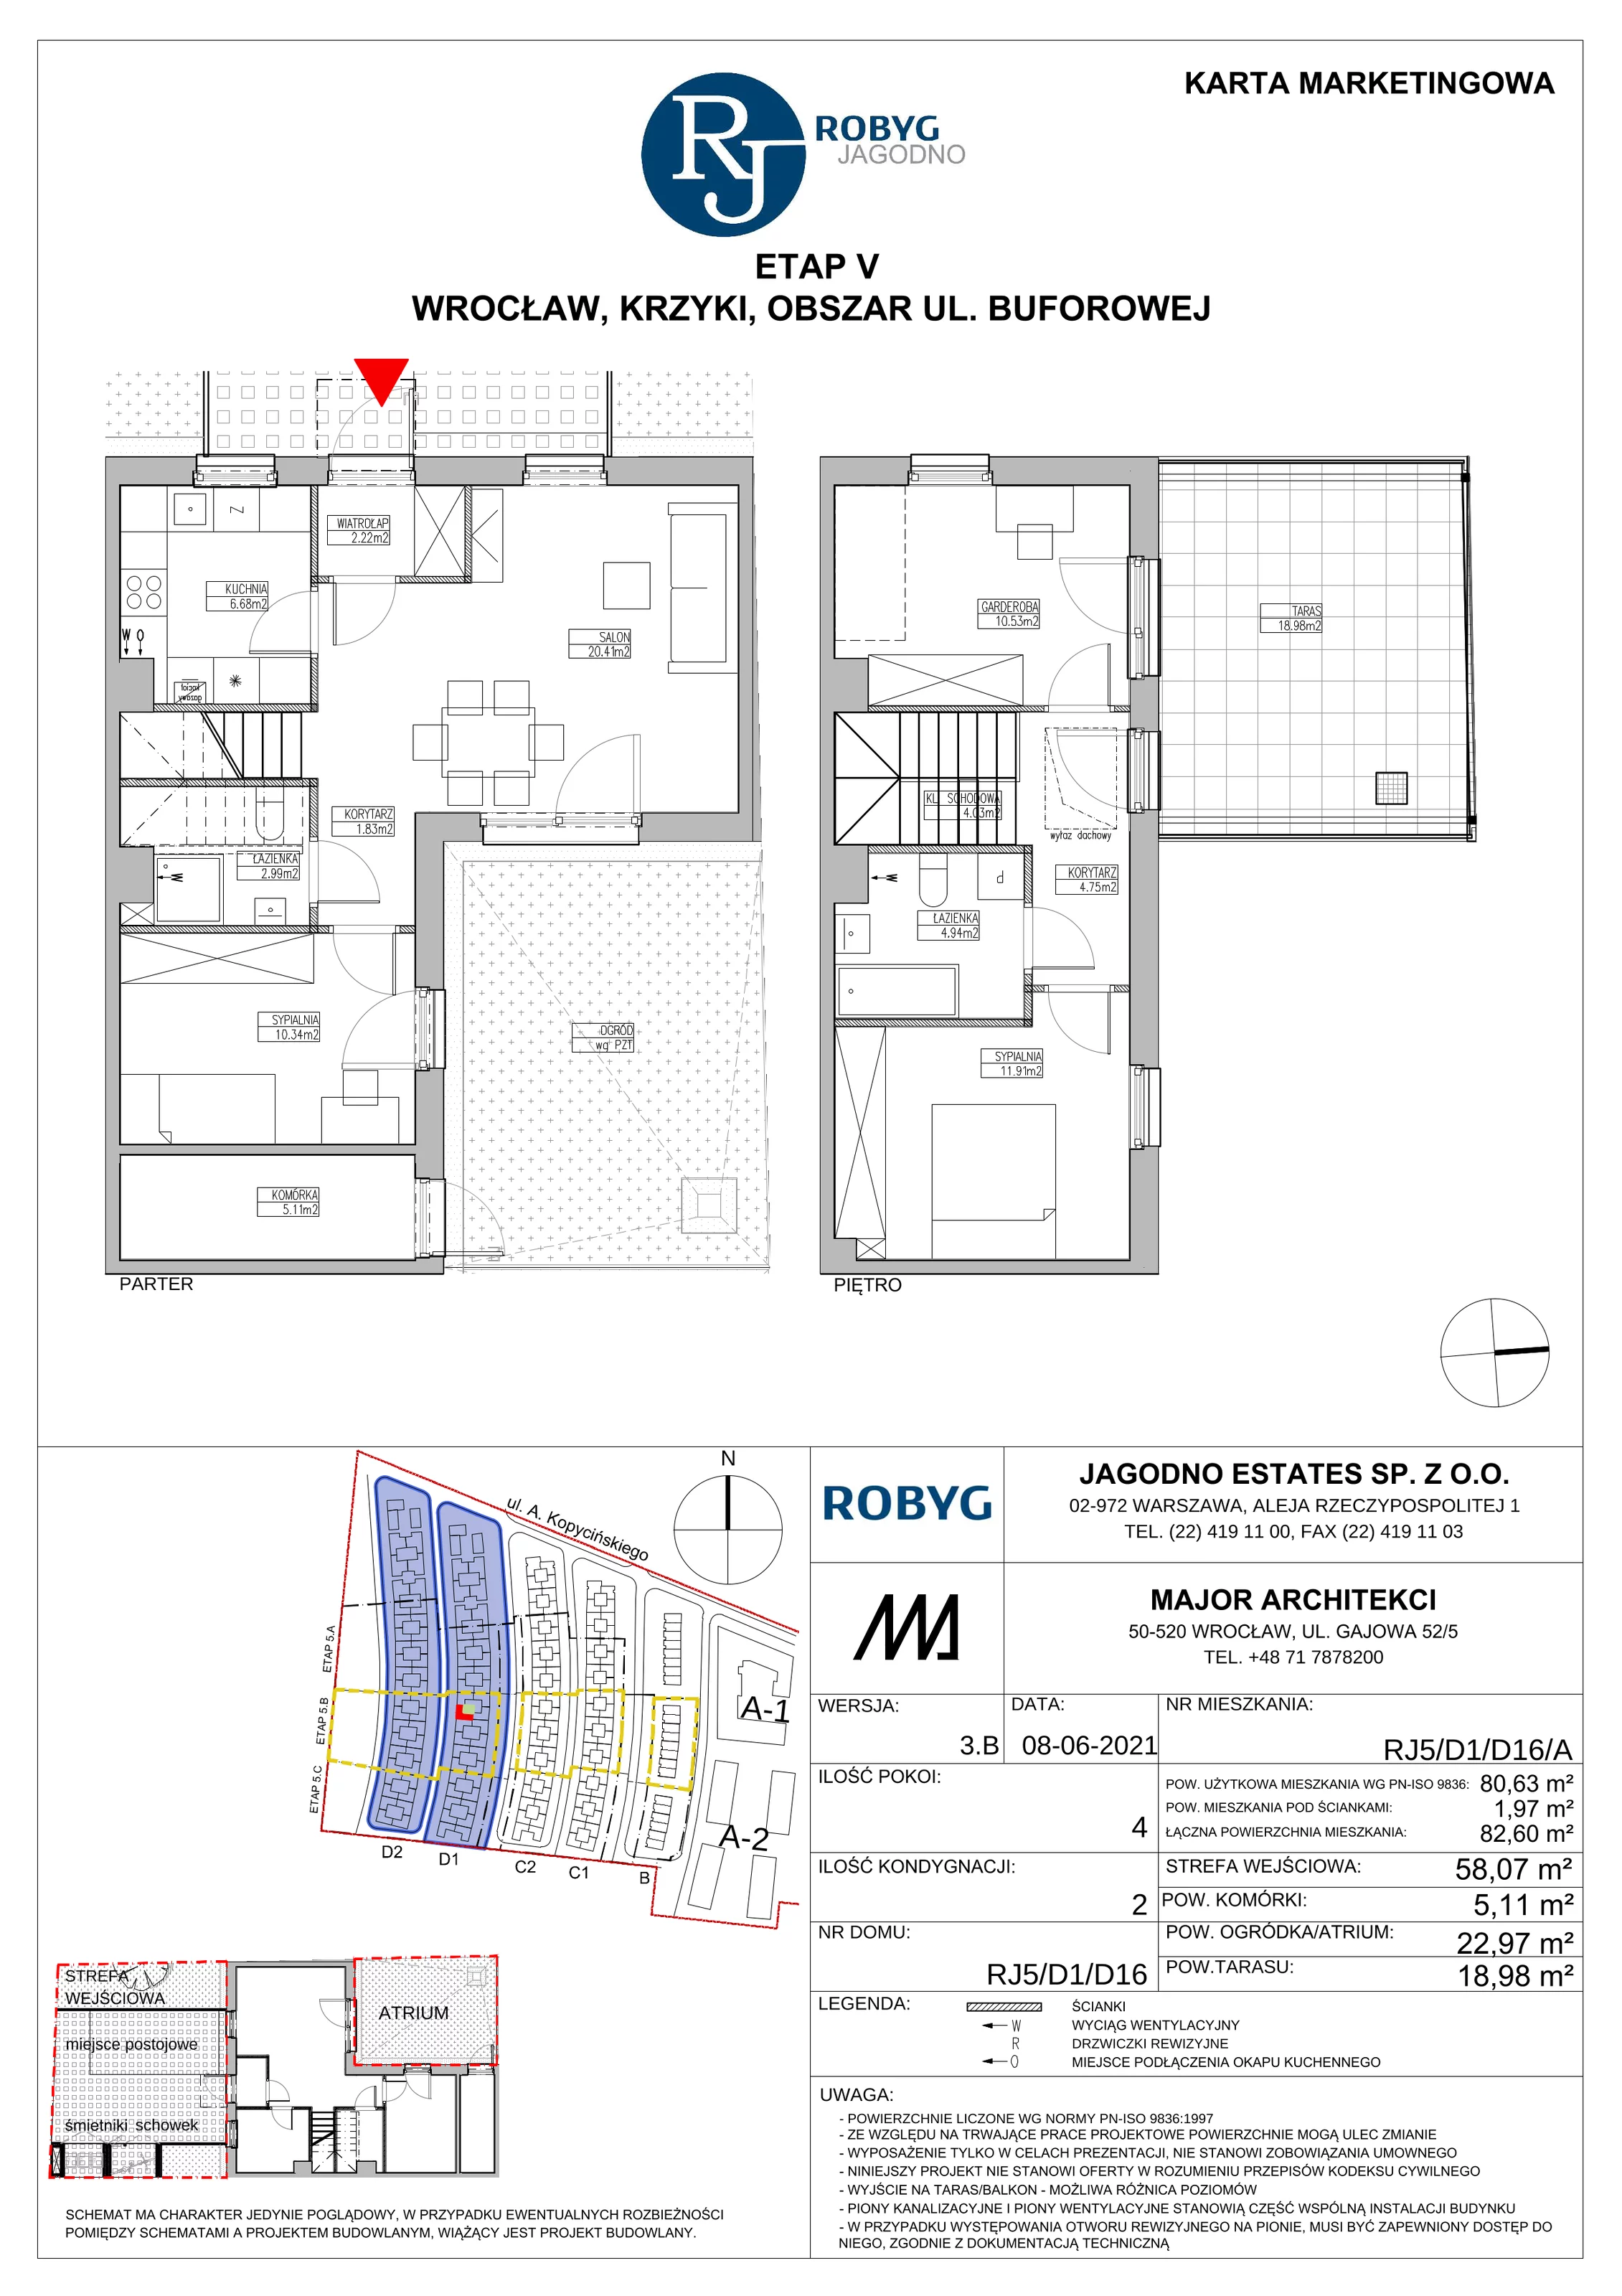 Dom 80,63 m², oferta nr RJ5/D1/D16/A, Robyg Jagodno, Wrocław, Jagodno, Krzyki, ul. Kopycińskiego